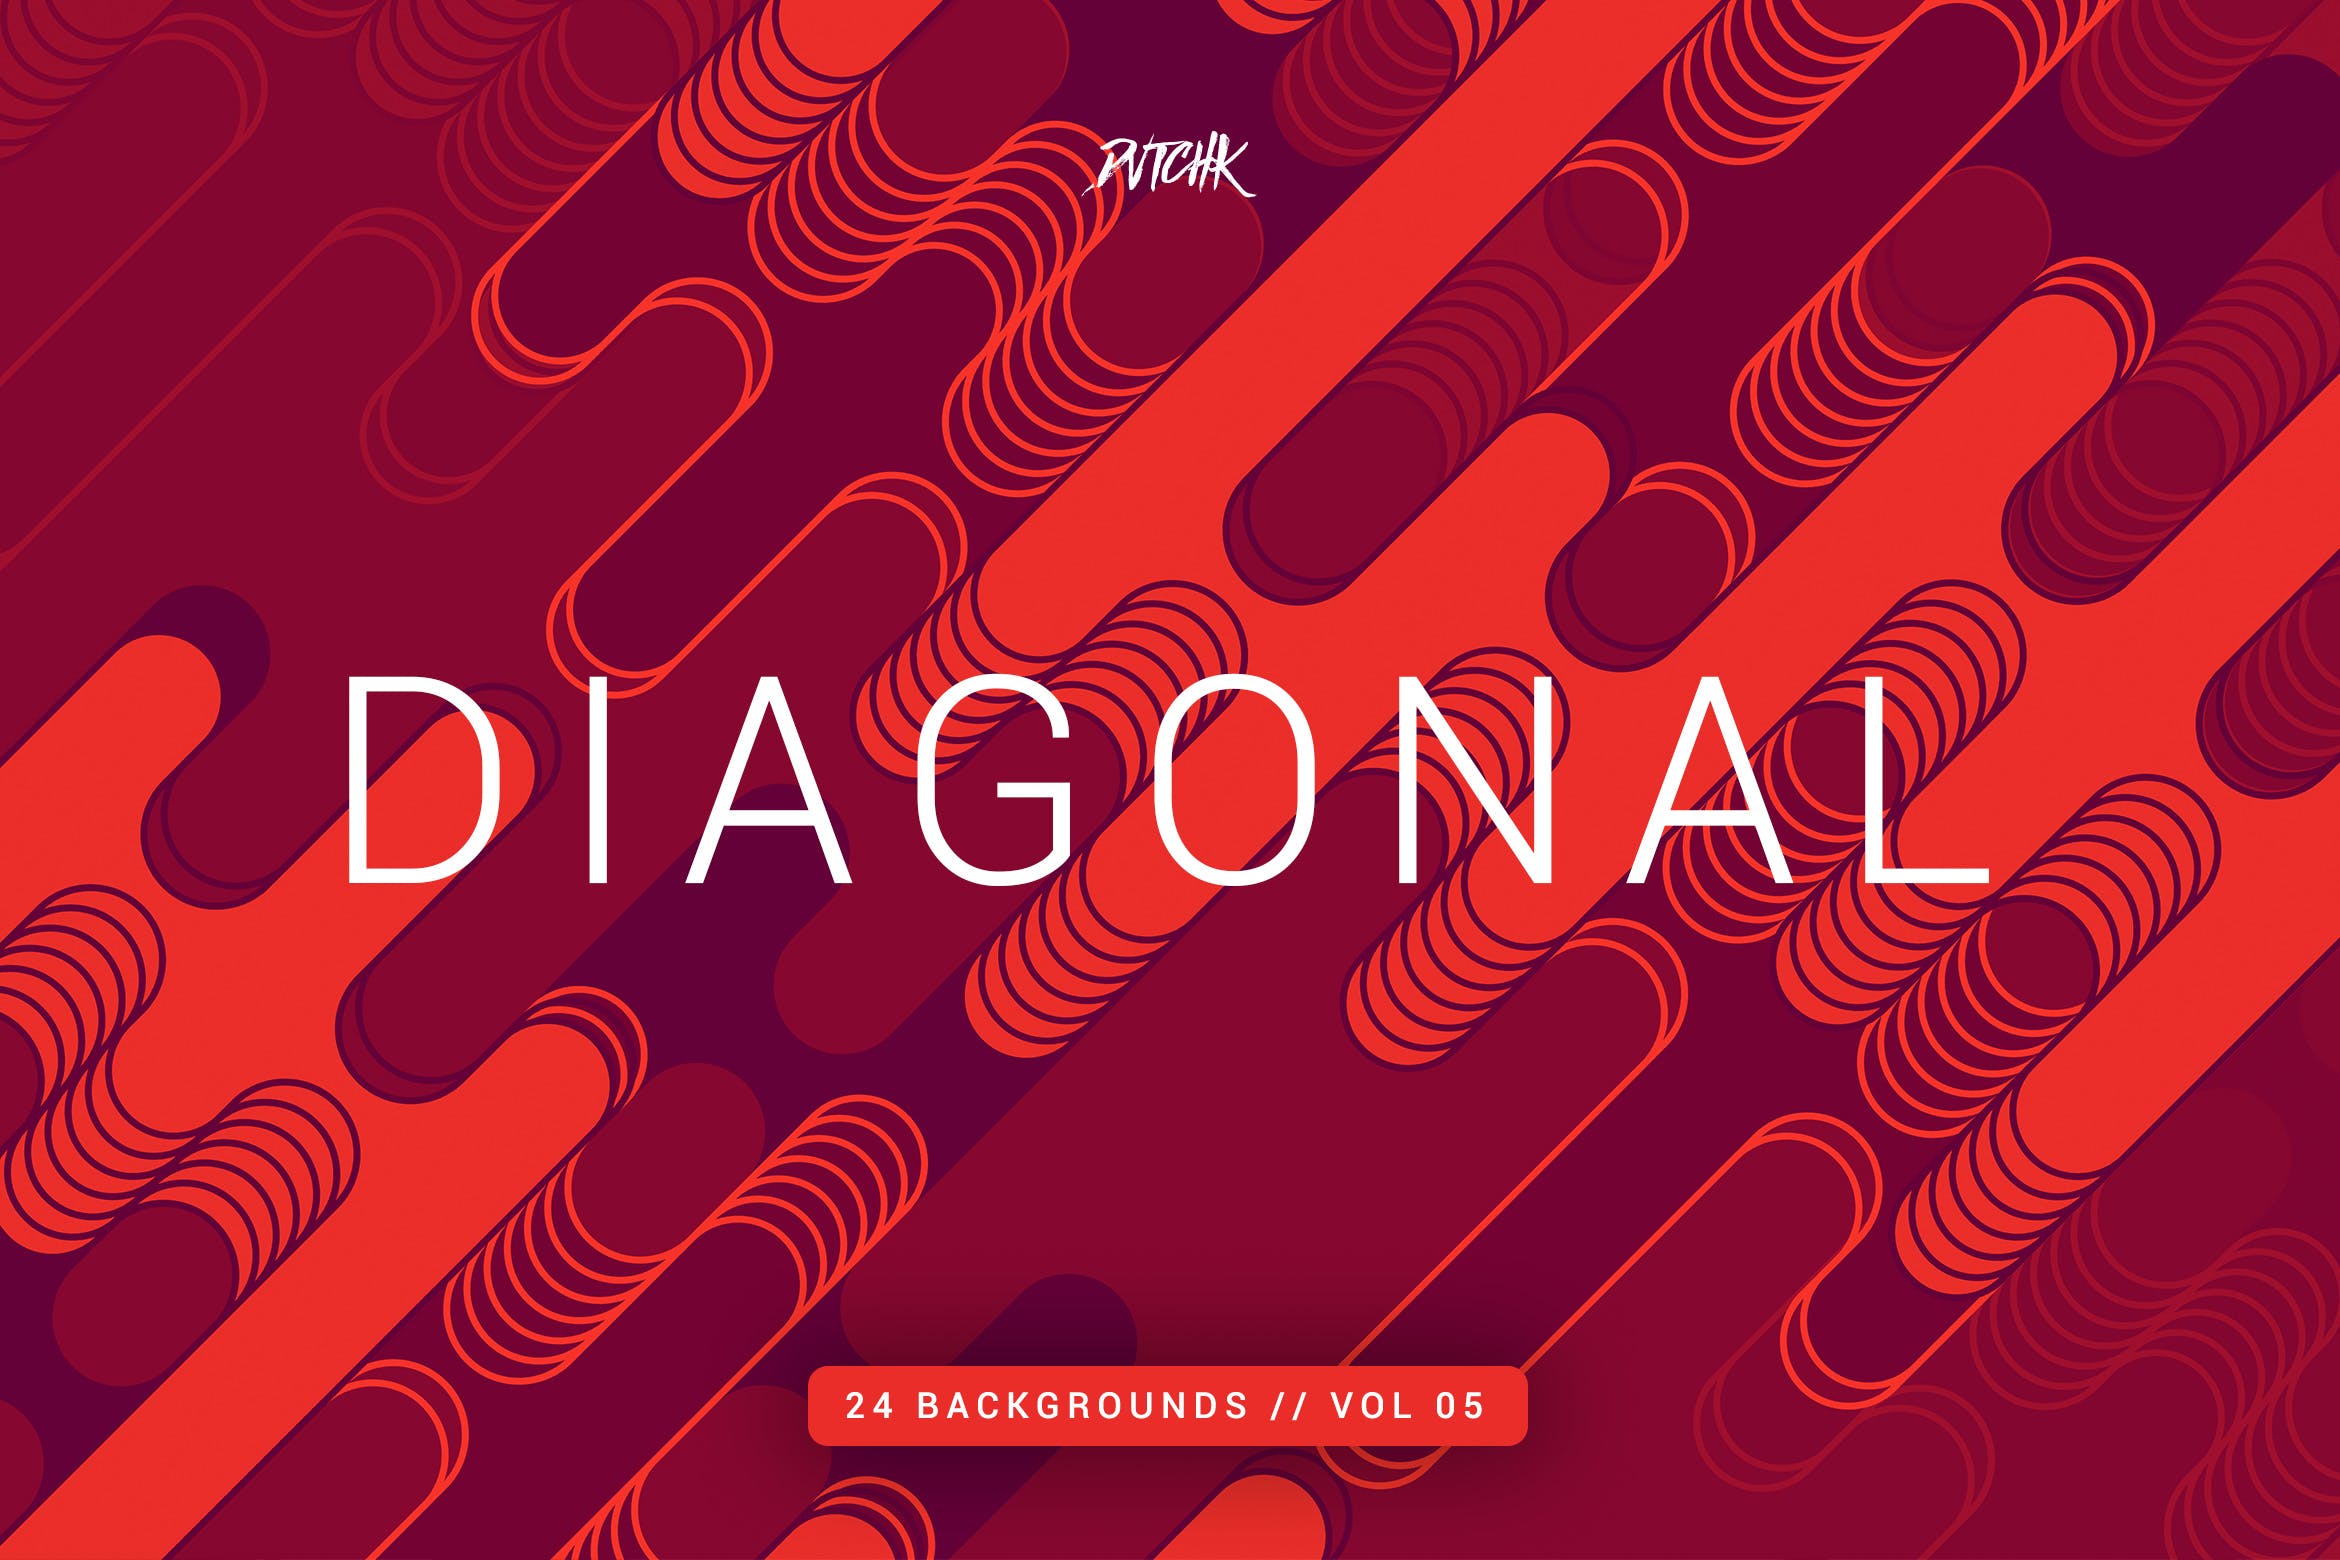 对角线|圆角线条几何图形背景素材v5 Diagonal |Rounded Lines Backgrounds | Vol. 05插图